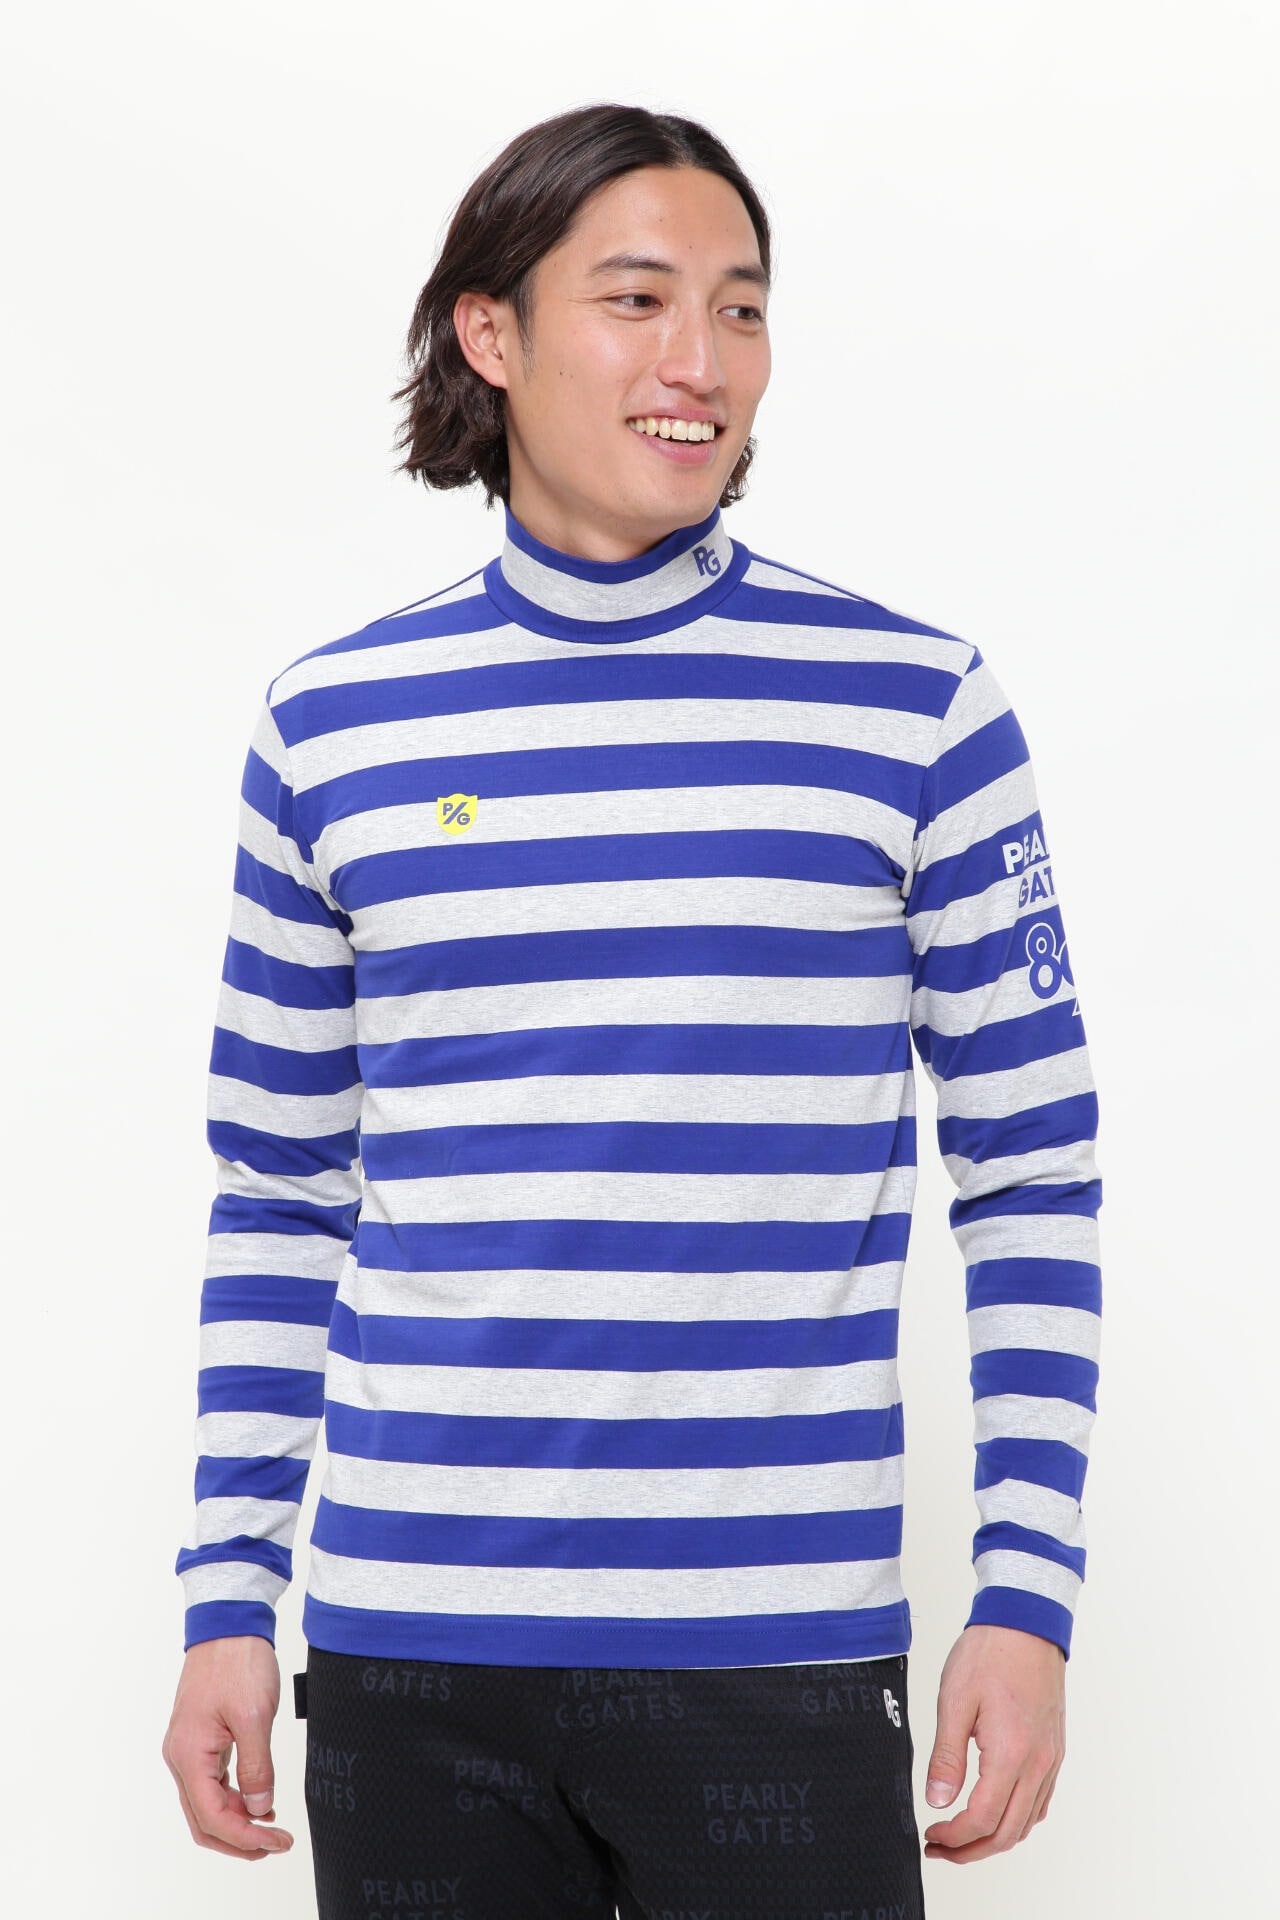 新品 パーリーゲイツ ボーダーハイネックシャツ M (4)赤×紺 日本製